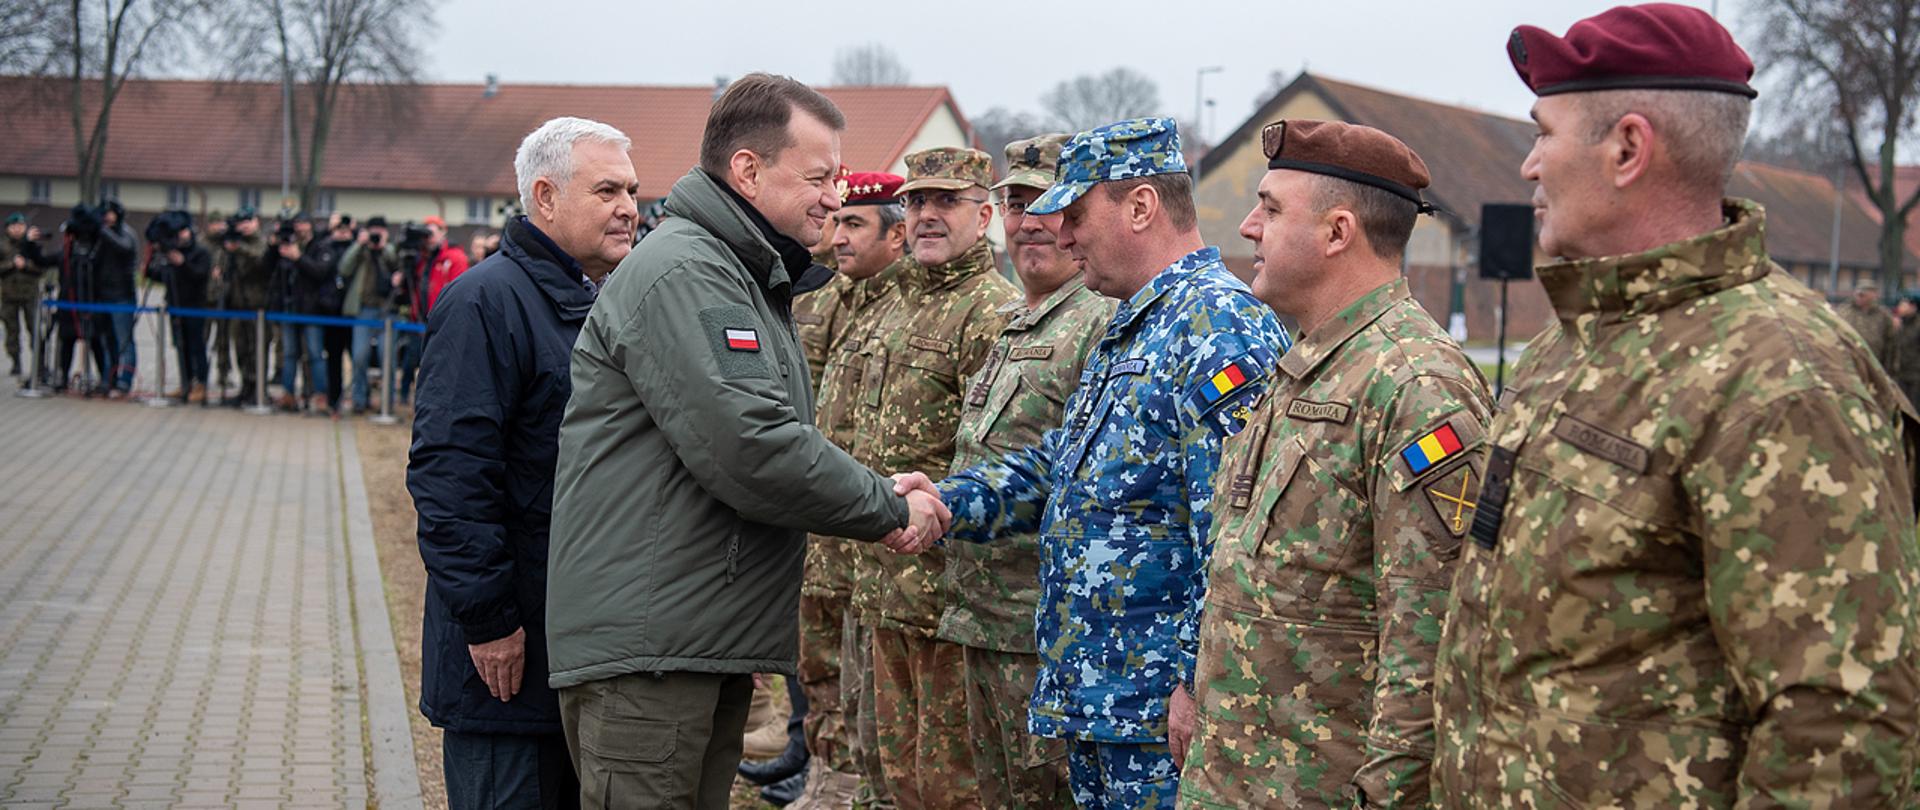 10 stycznia 2023 r. w Bemowie Piskim, Mariusz Błaszczak, wicepremier - minister obrony narodowej i Angel Tîlvăr, minister obrony narodowej Rumunii, spotkali się z żołnierzami Batalionowej Grupy Bojowej, stacjonującymi w Polsce w ramach eFP (Wzmocnionej Wysuniętej Obecności).
